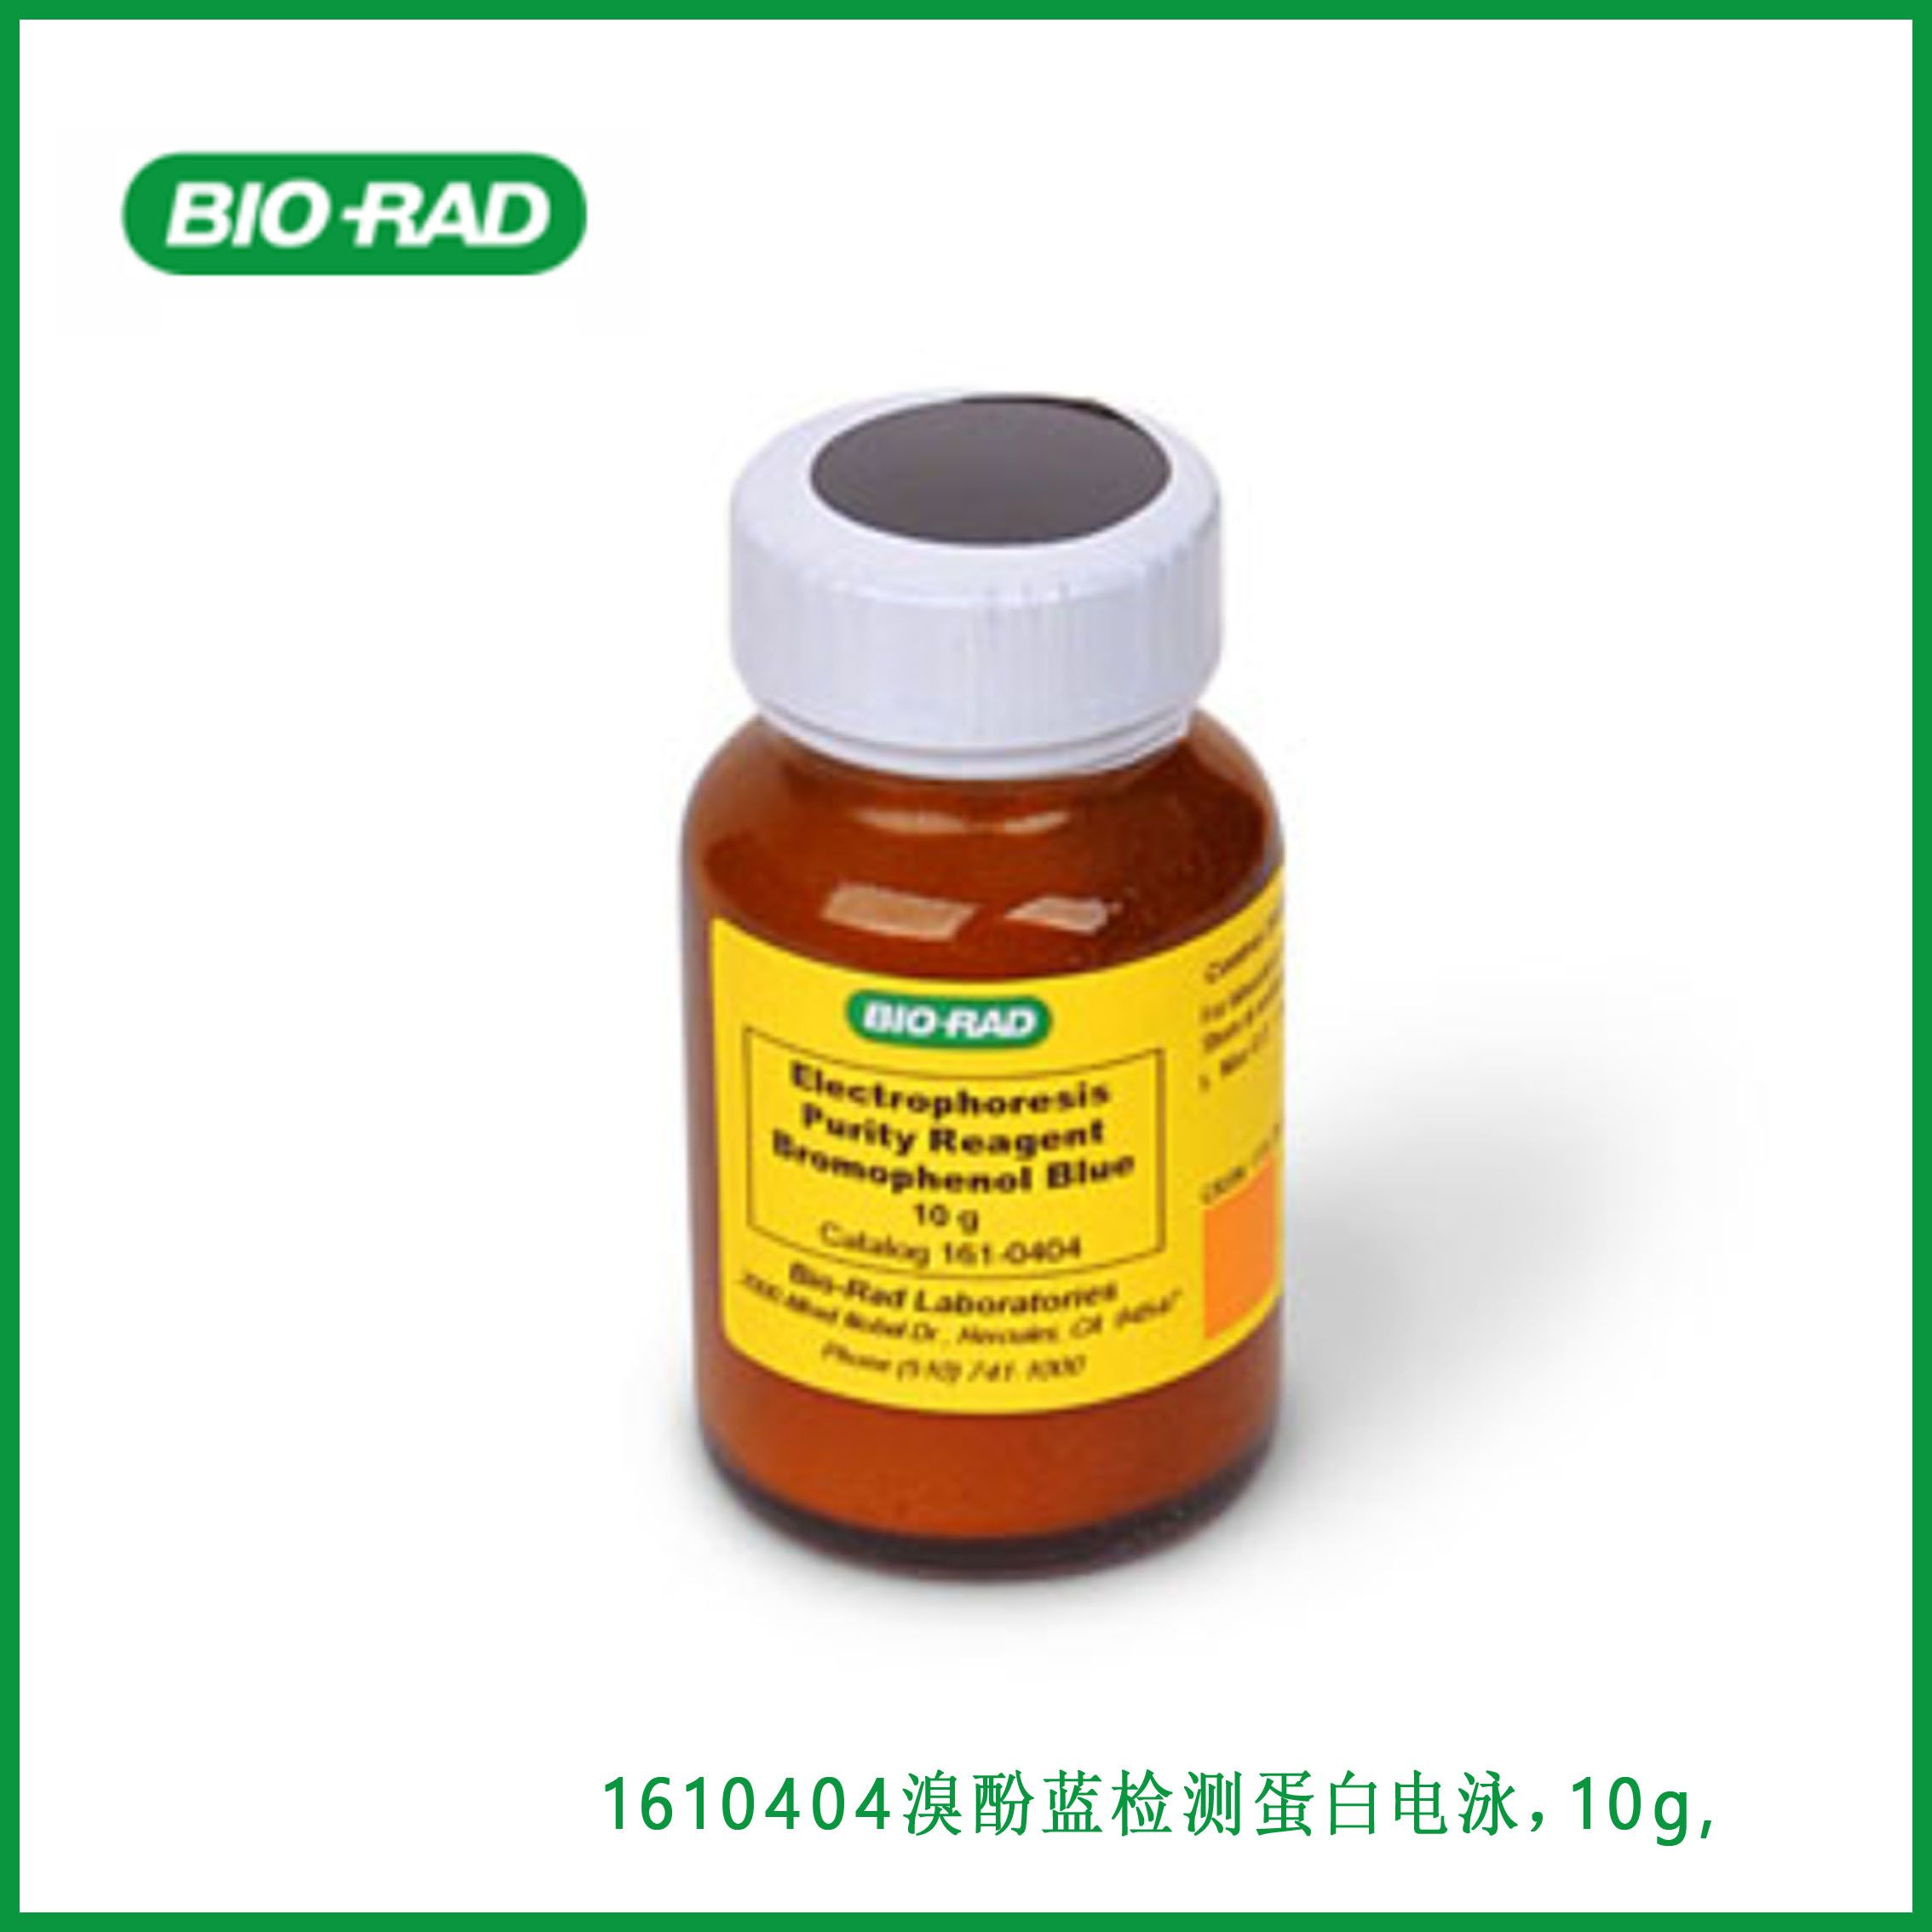 伯乐Bio-Rad1610404Bromophenol Blue， 溴酚蓝检测蛋白电泳，10g，简介